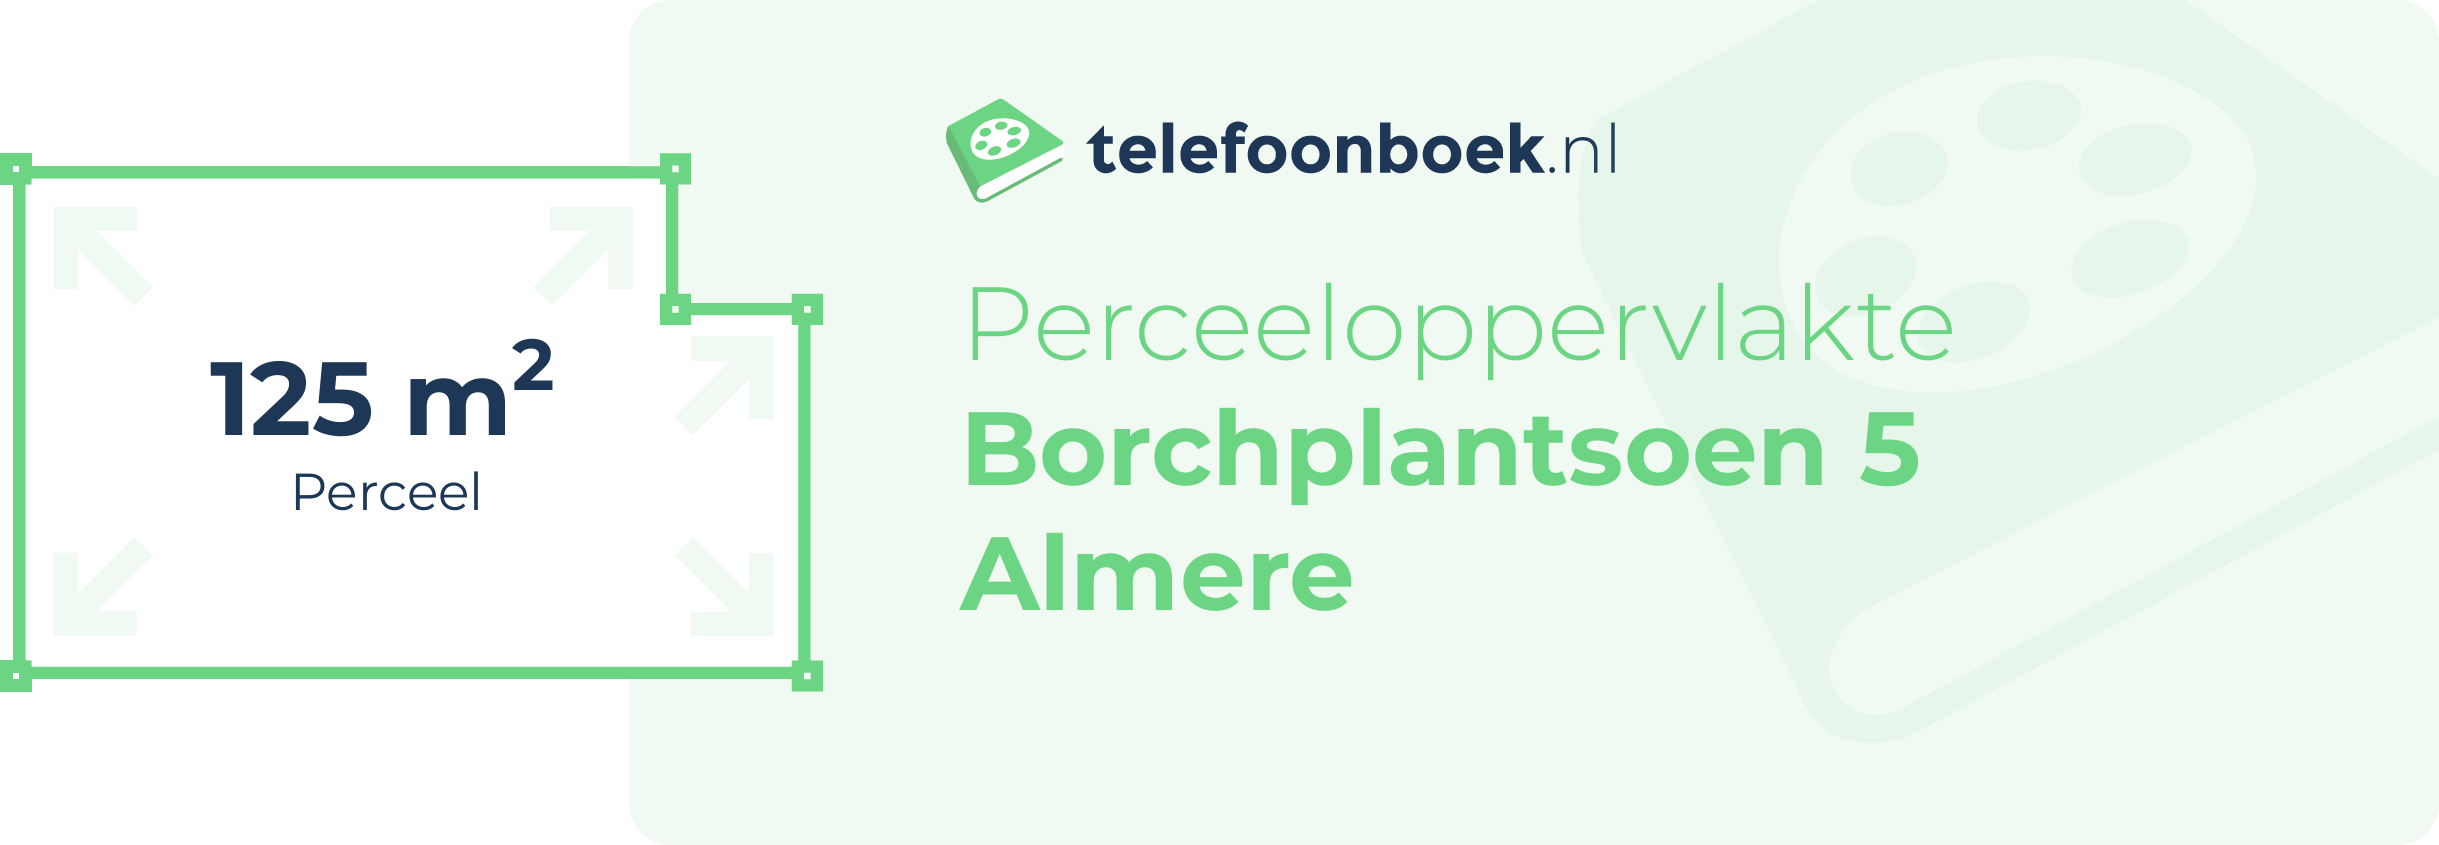 Perceeloppervlakte Borchplantsoen 5 Almere